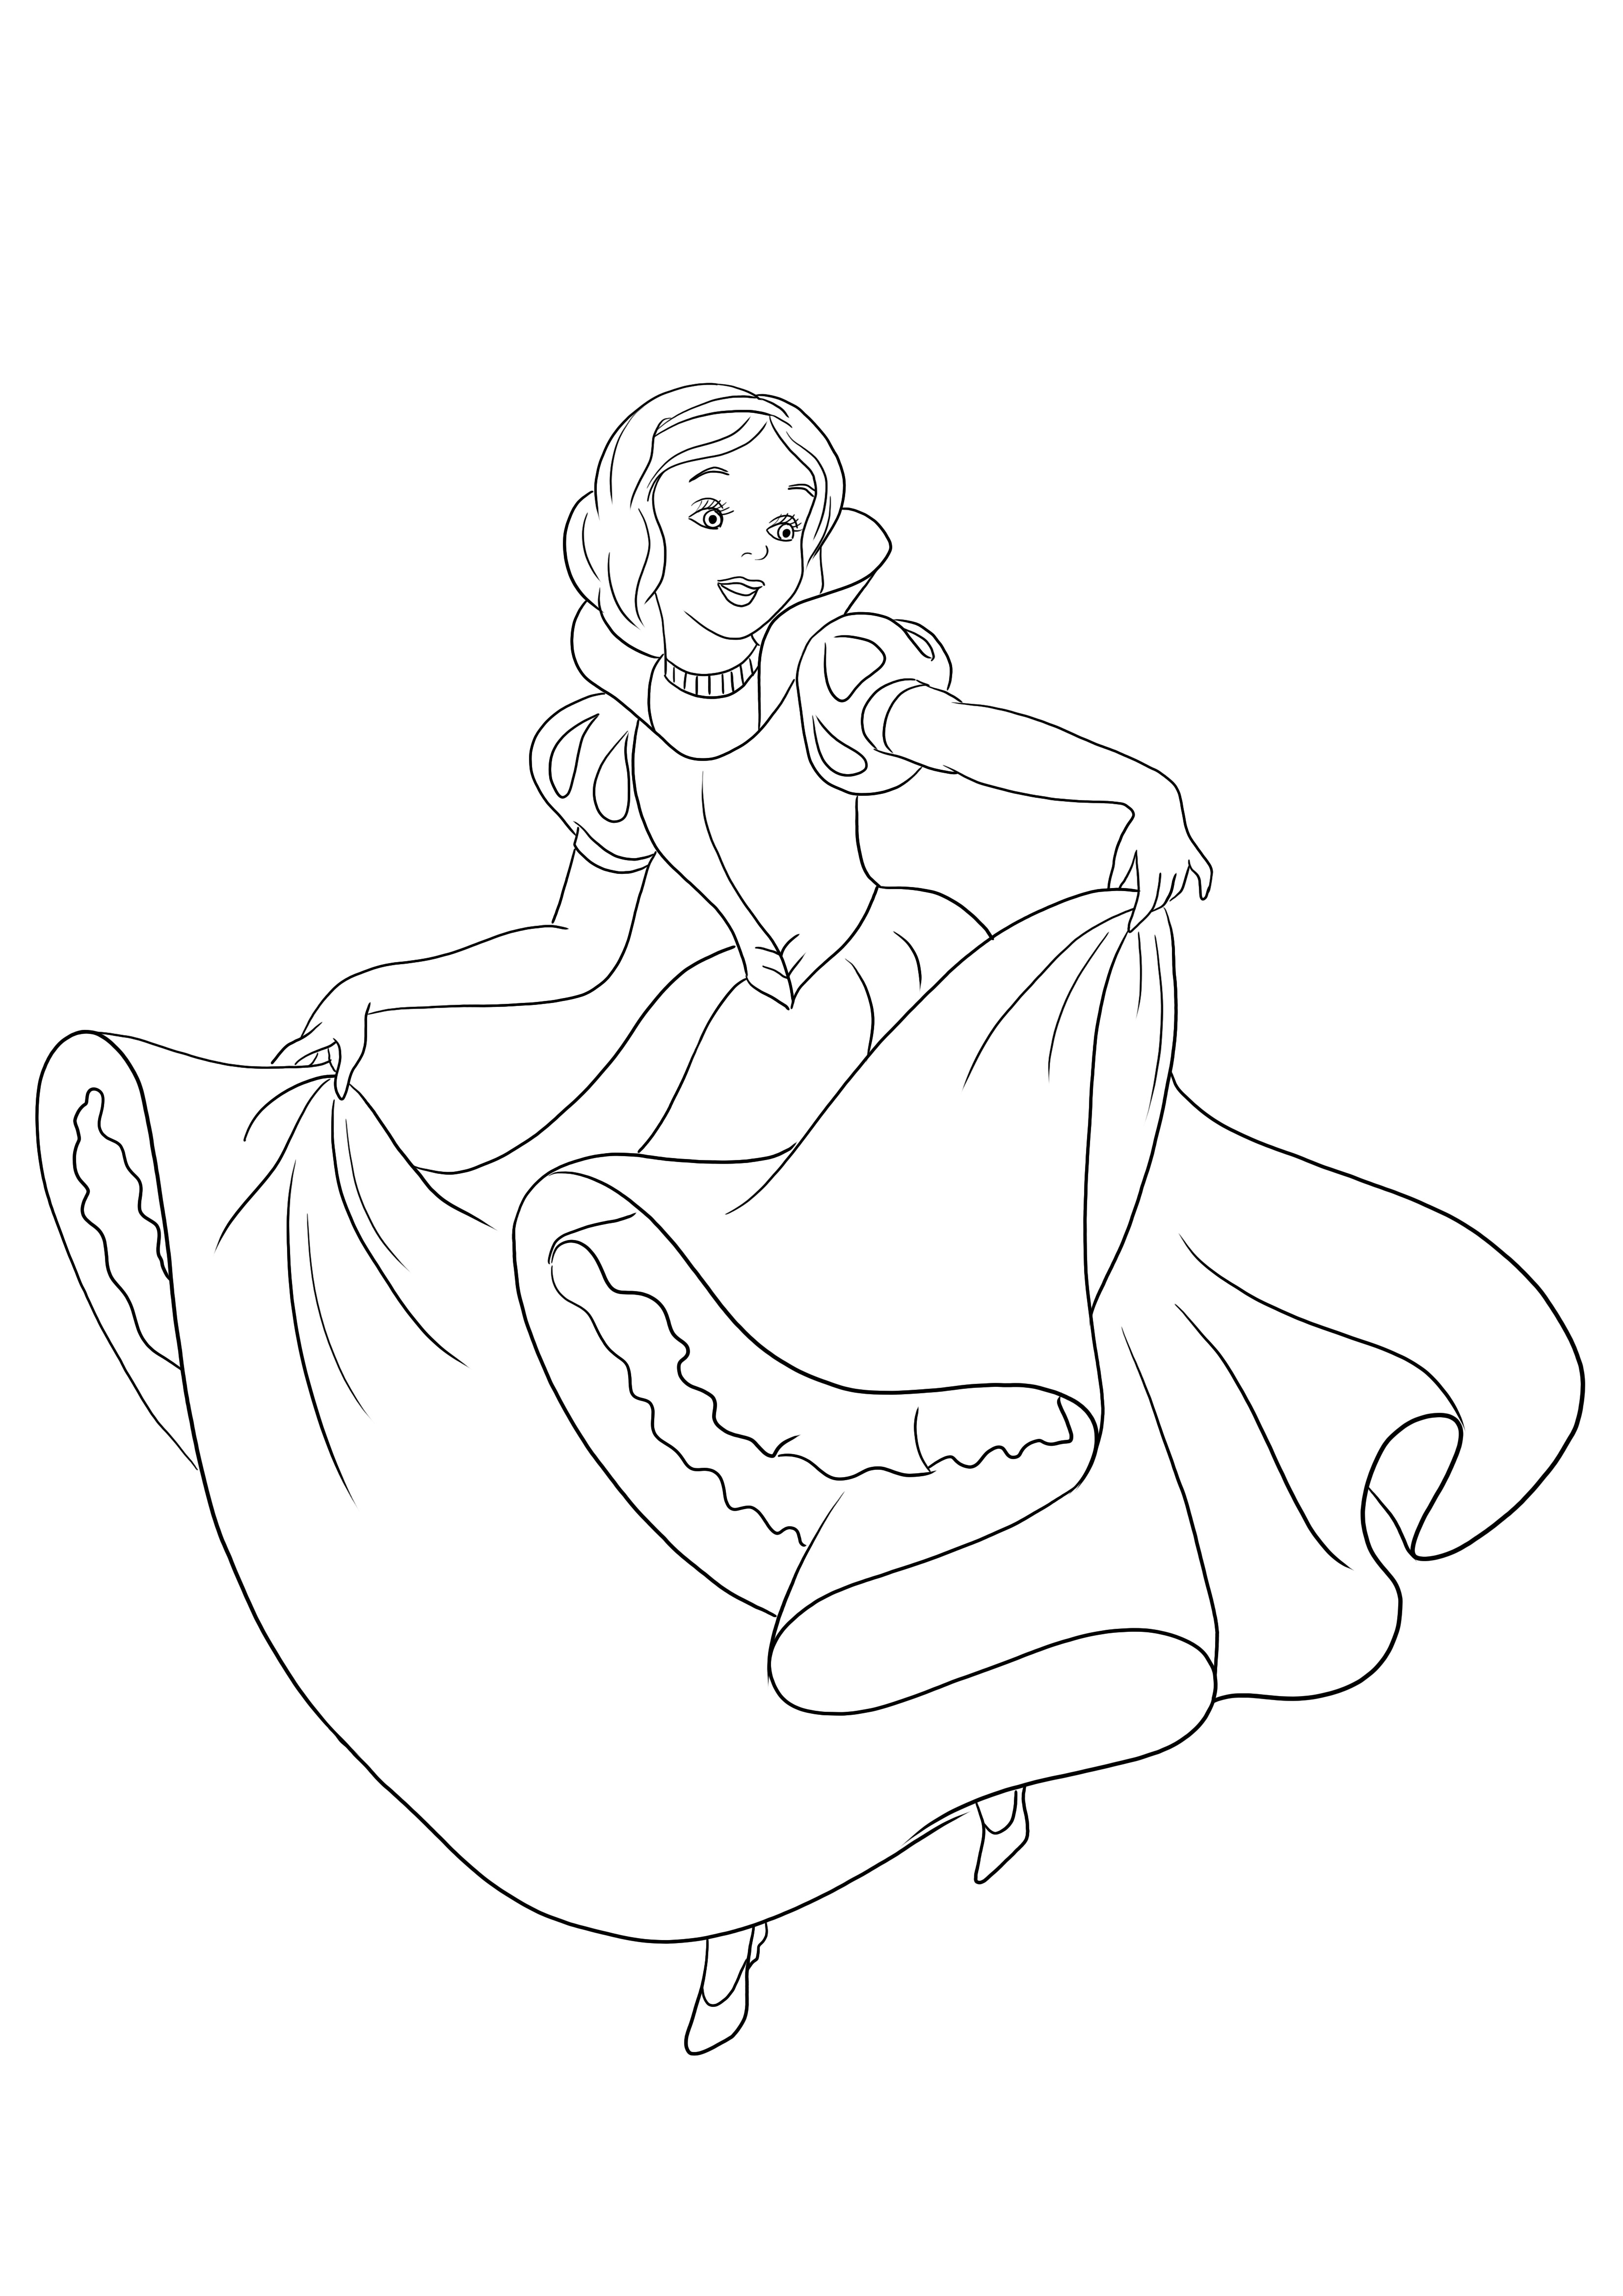 Pamuk Prenses'in kullanıma hazır dans eden resmini ücretsiz olarak renklendirebilir ve yazdırabilirsiniz.